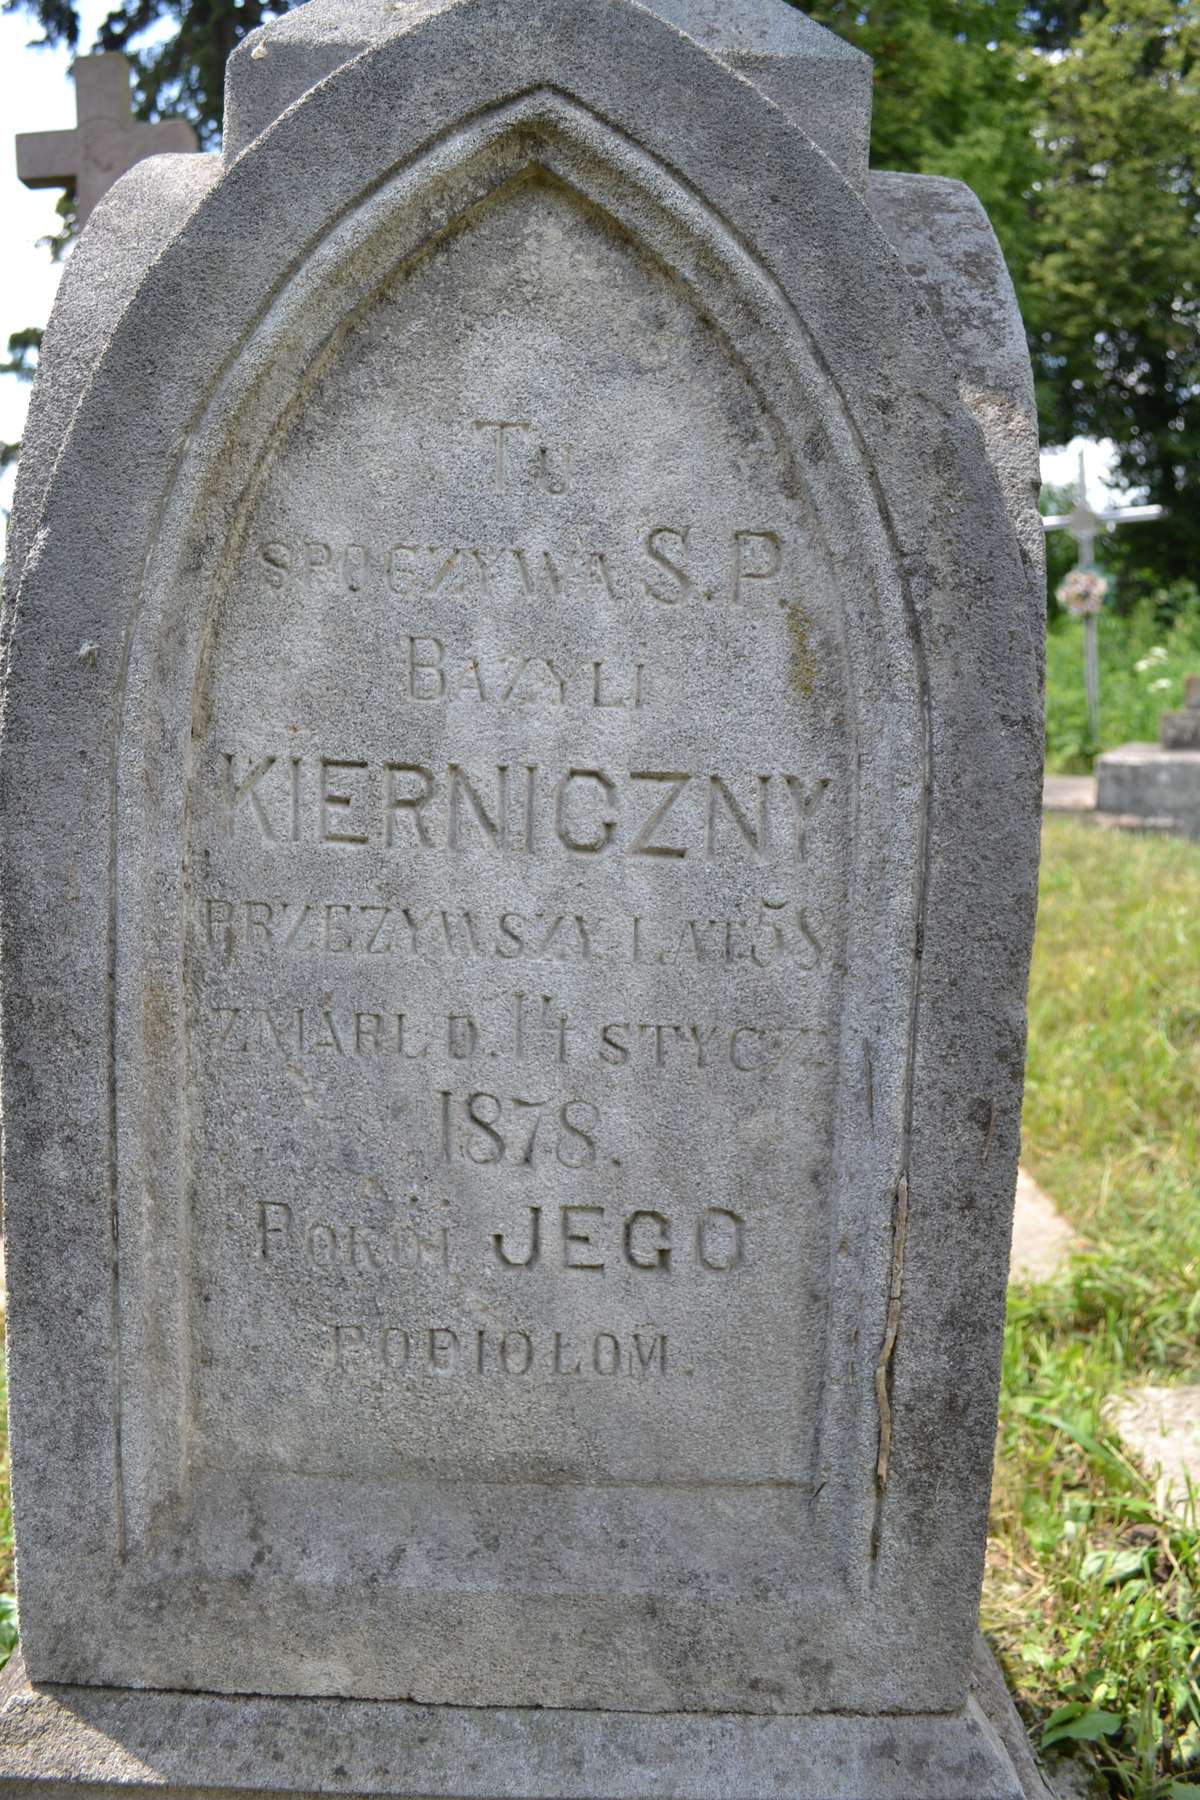 Nagrobek Bazylego Kiernicznego, cmentarz w Berezownicy Wielkiej I